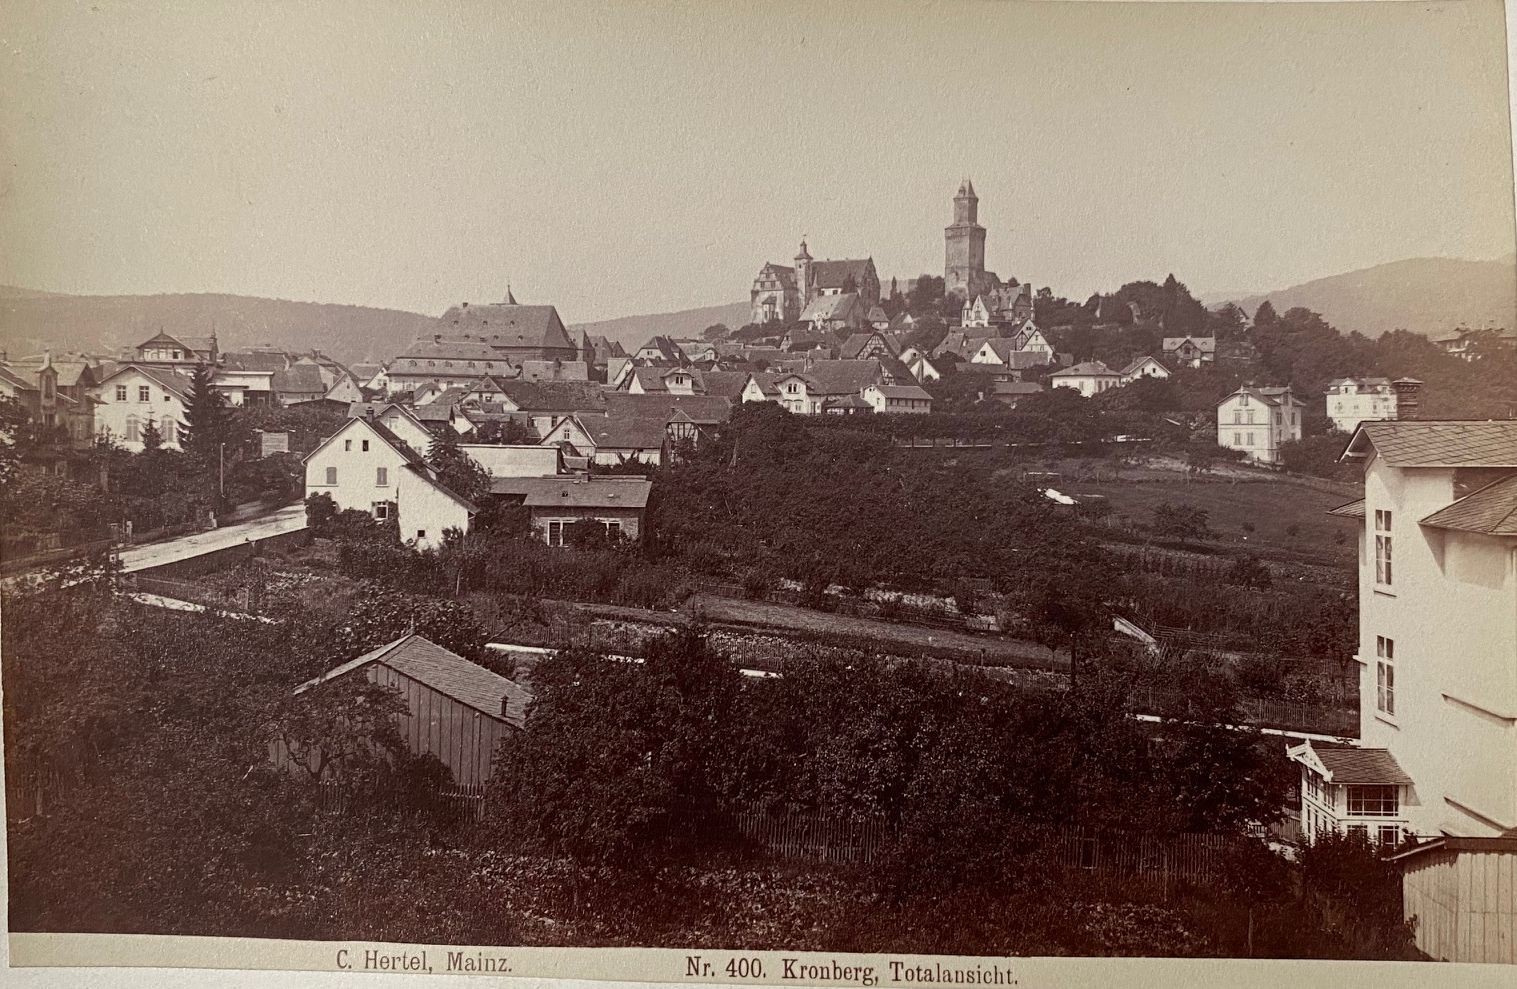 Fotografie, Carl Hertel No. 400, Kronberg Totalansicht, ca. 1885 (Taunus-Rhein-Main - Regionalgeschichtliche Sammlung Dr. Stefan Naas CC BY-NC-SA)